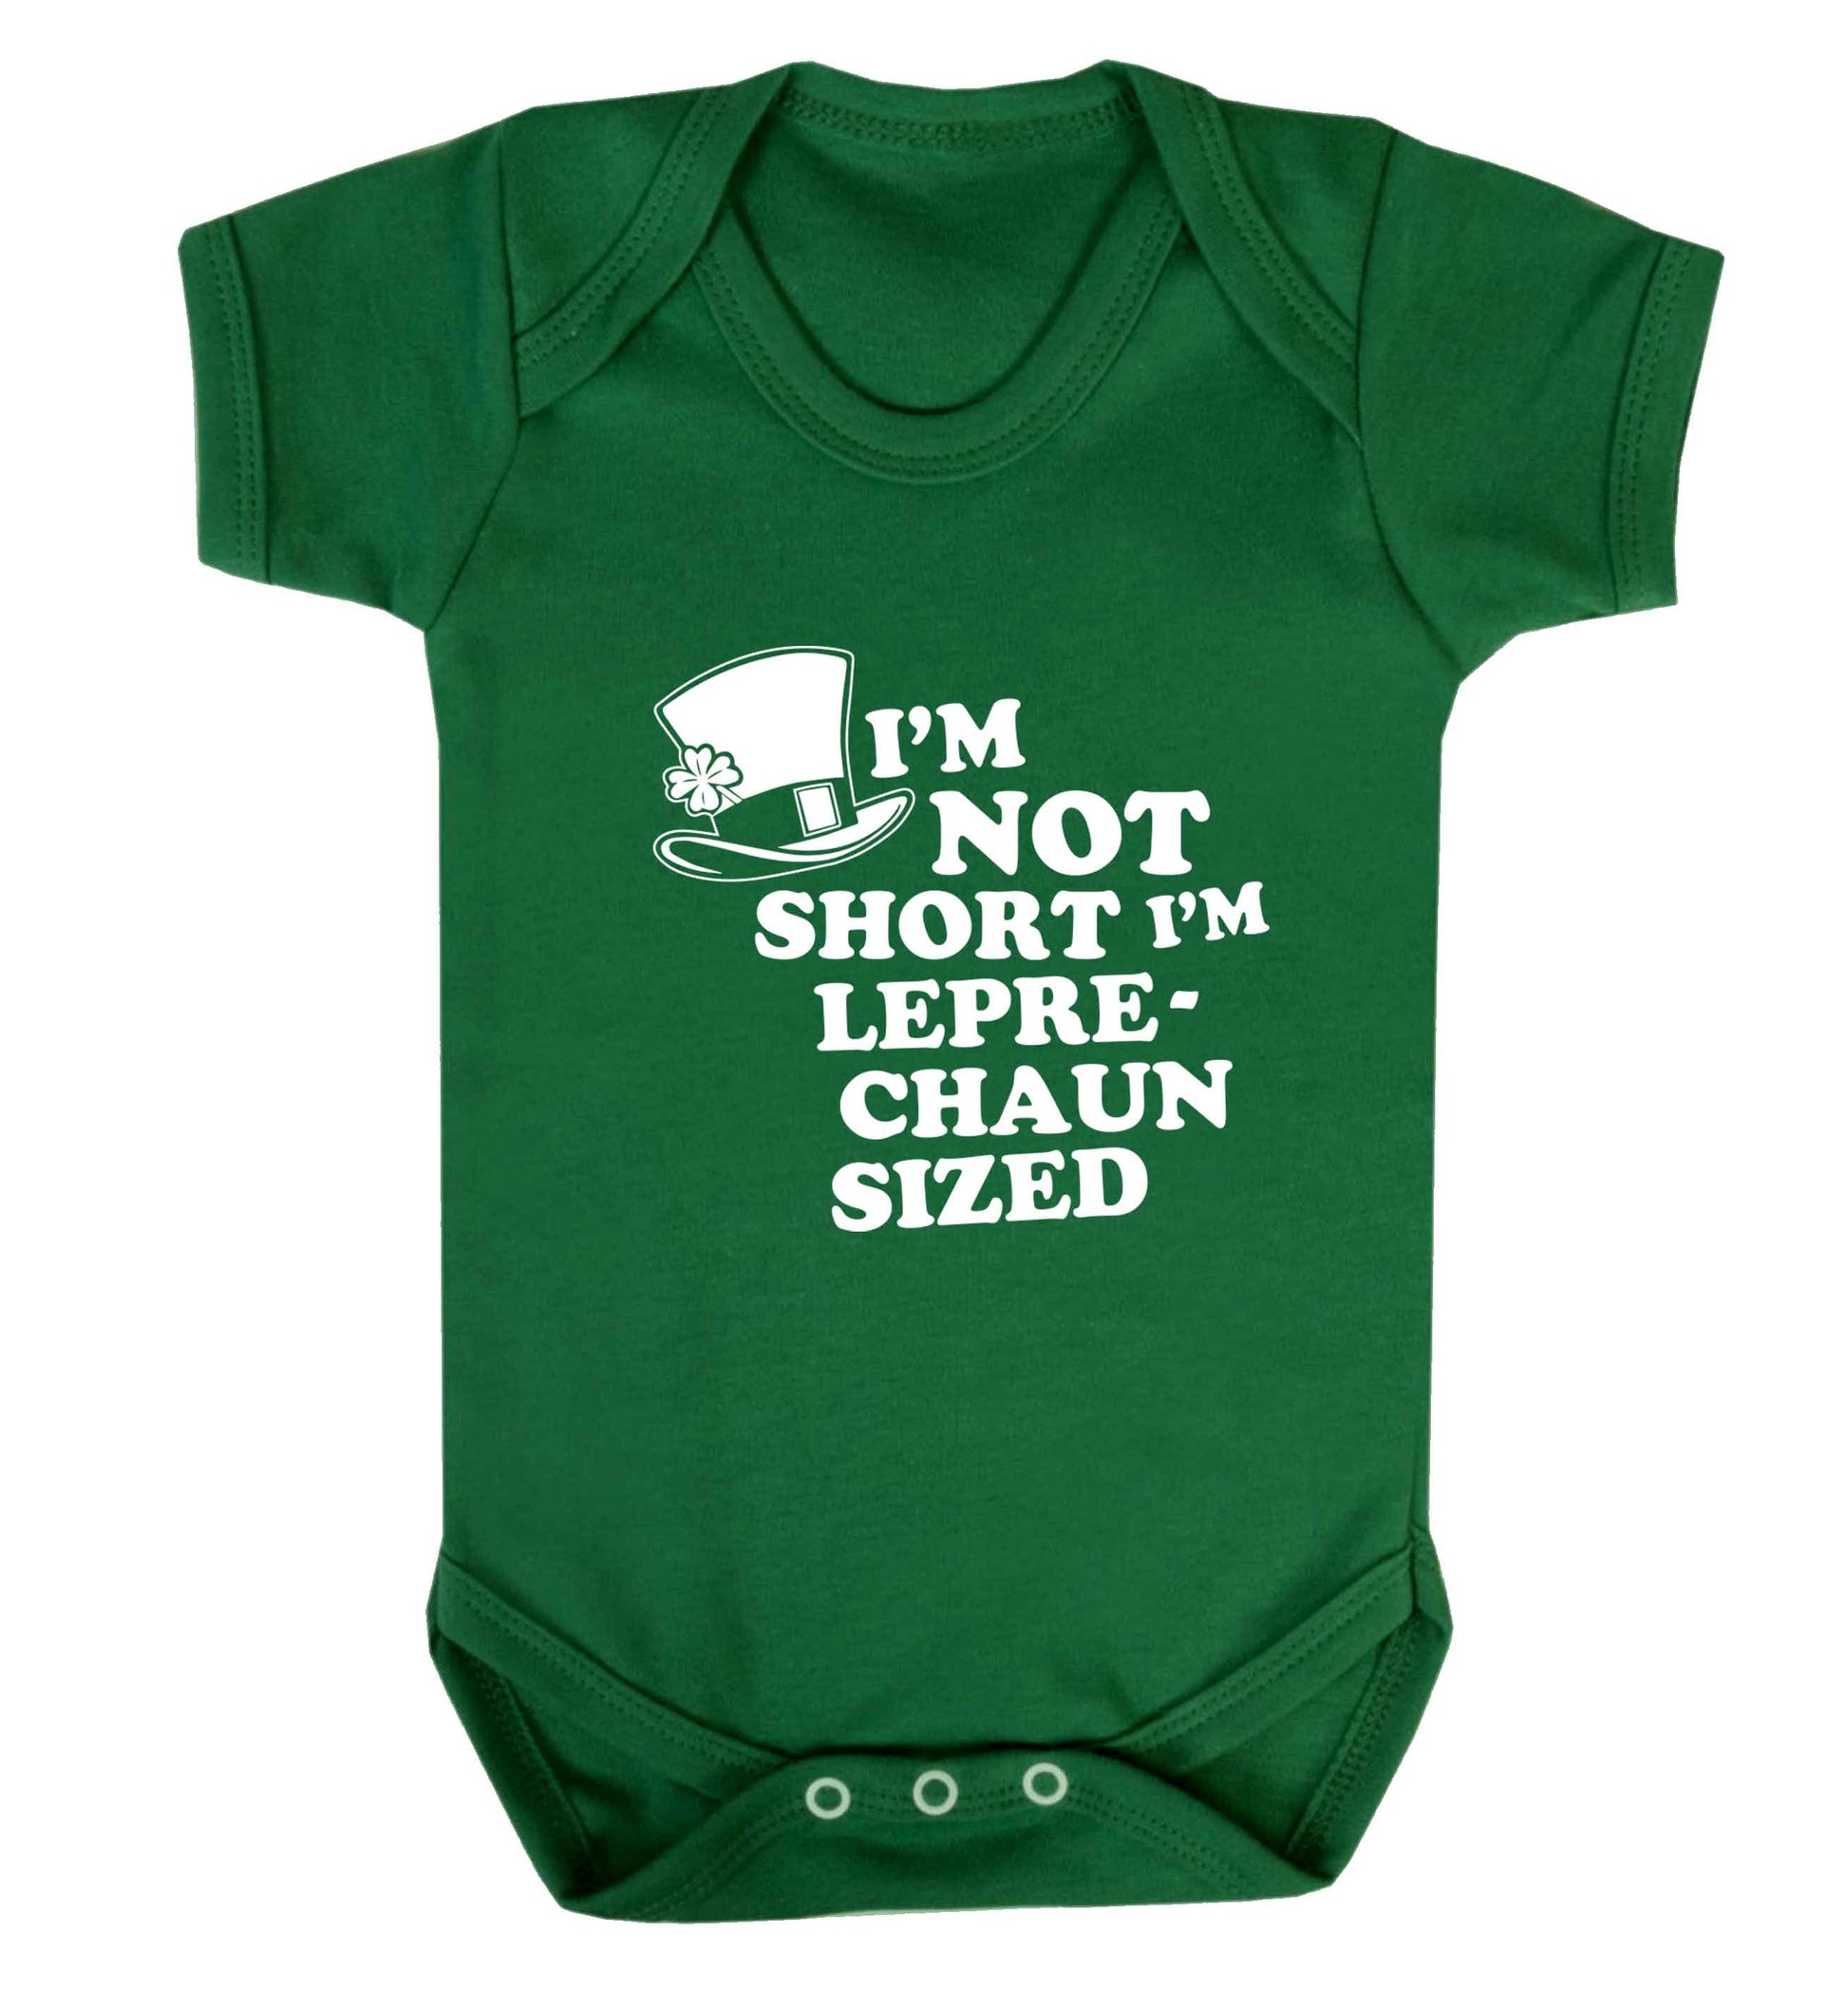 I'm not short I'm leprechaun sized baby vest green 18-24 months